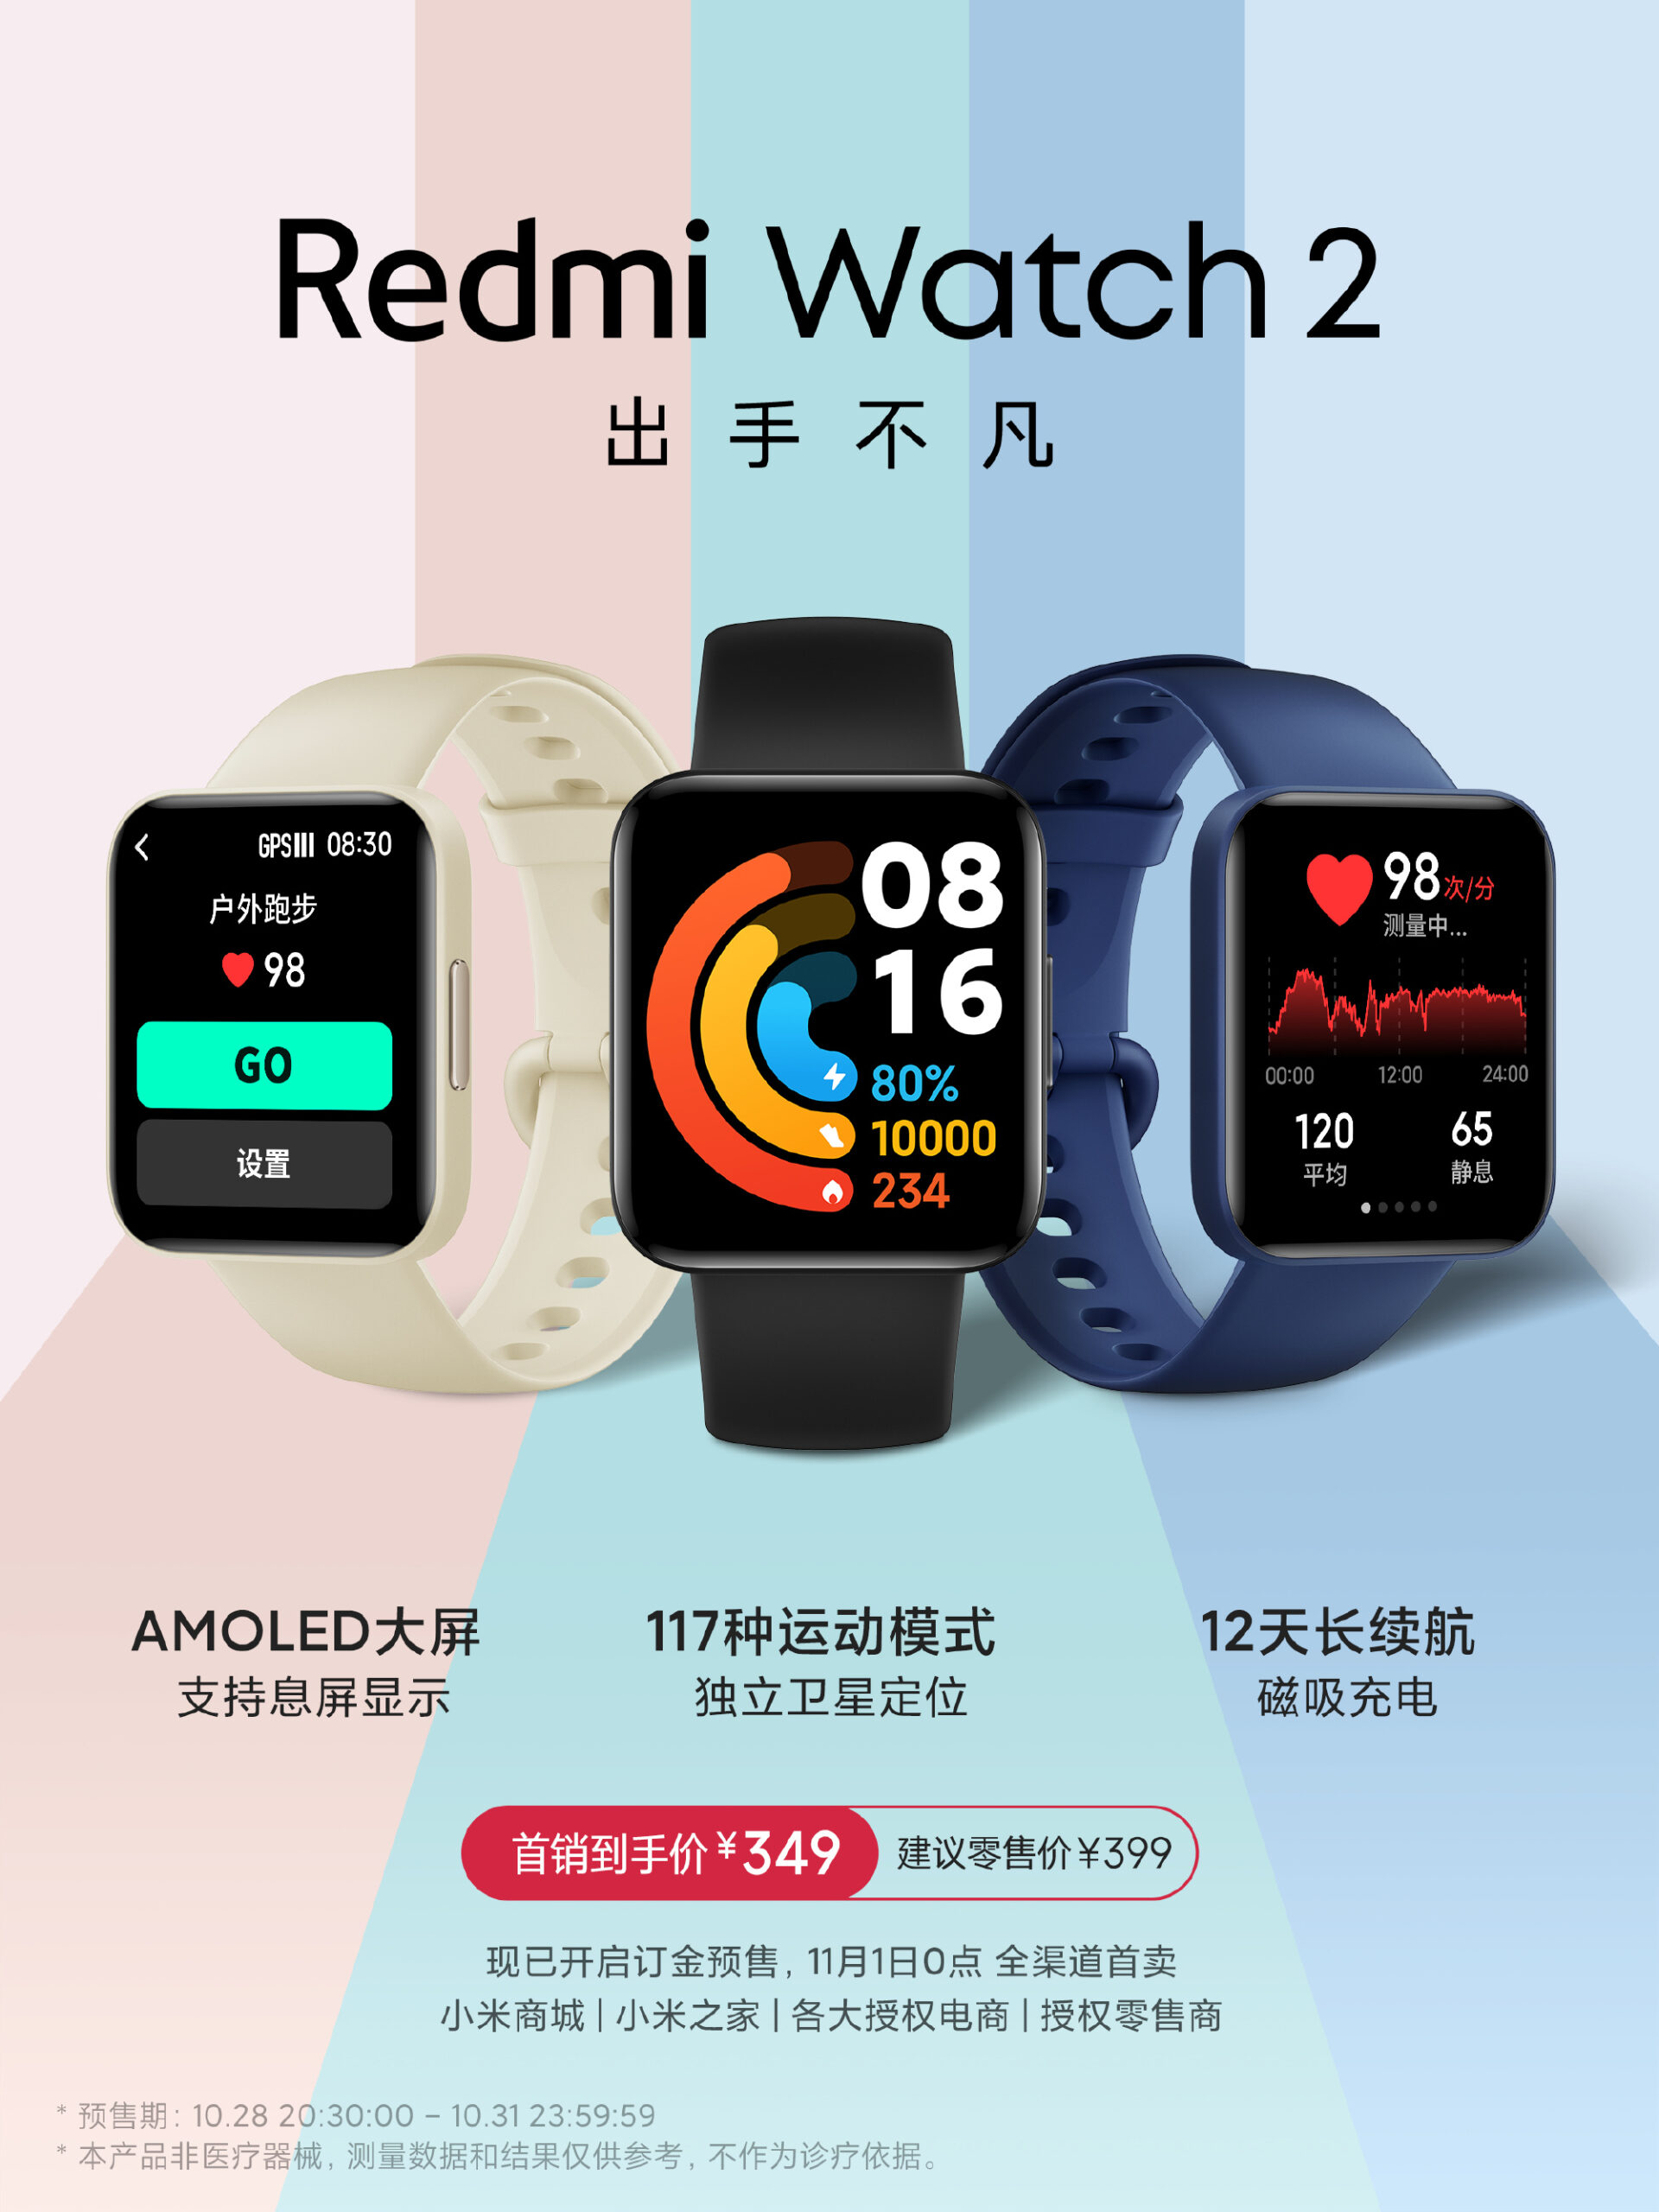 redmi watch 2 img1 scaled